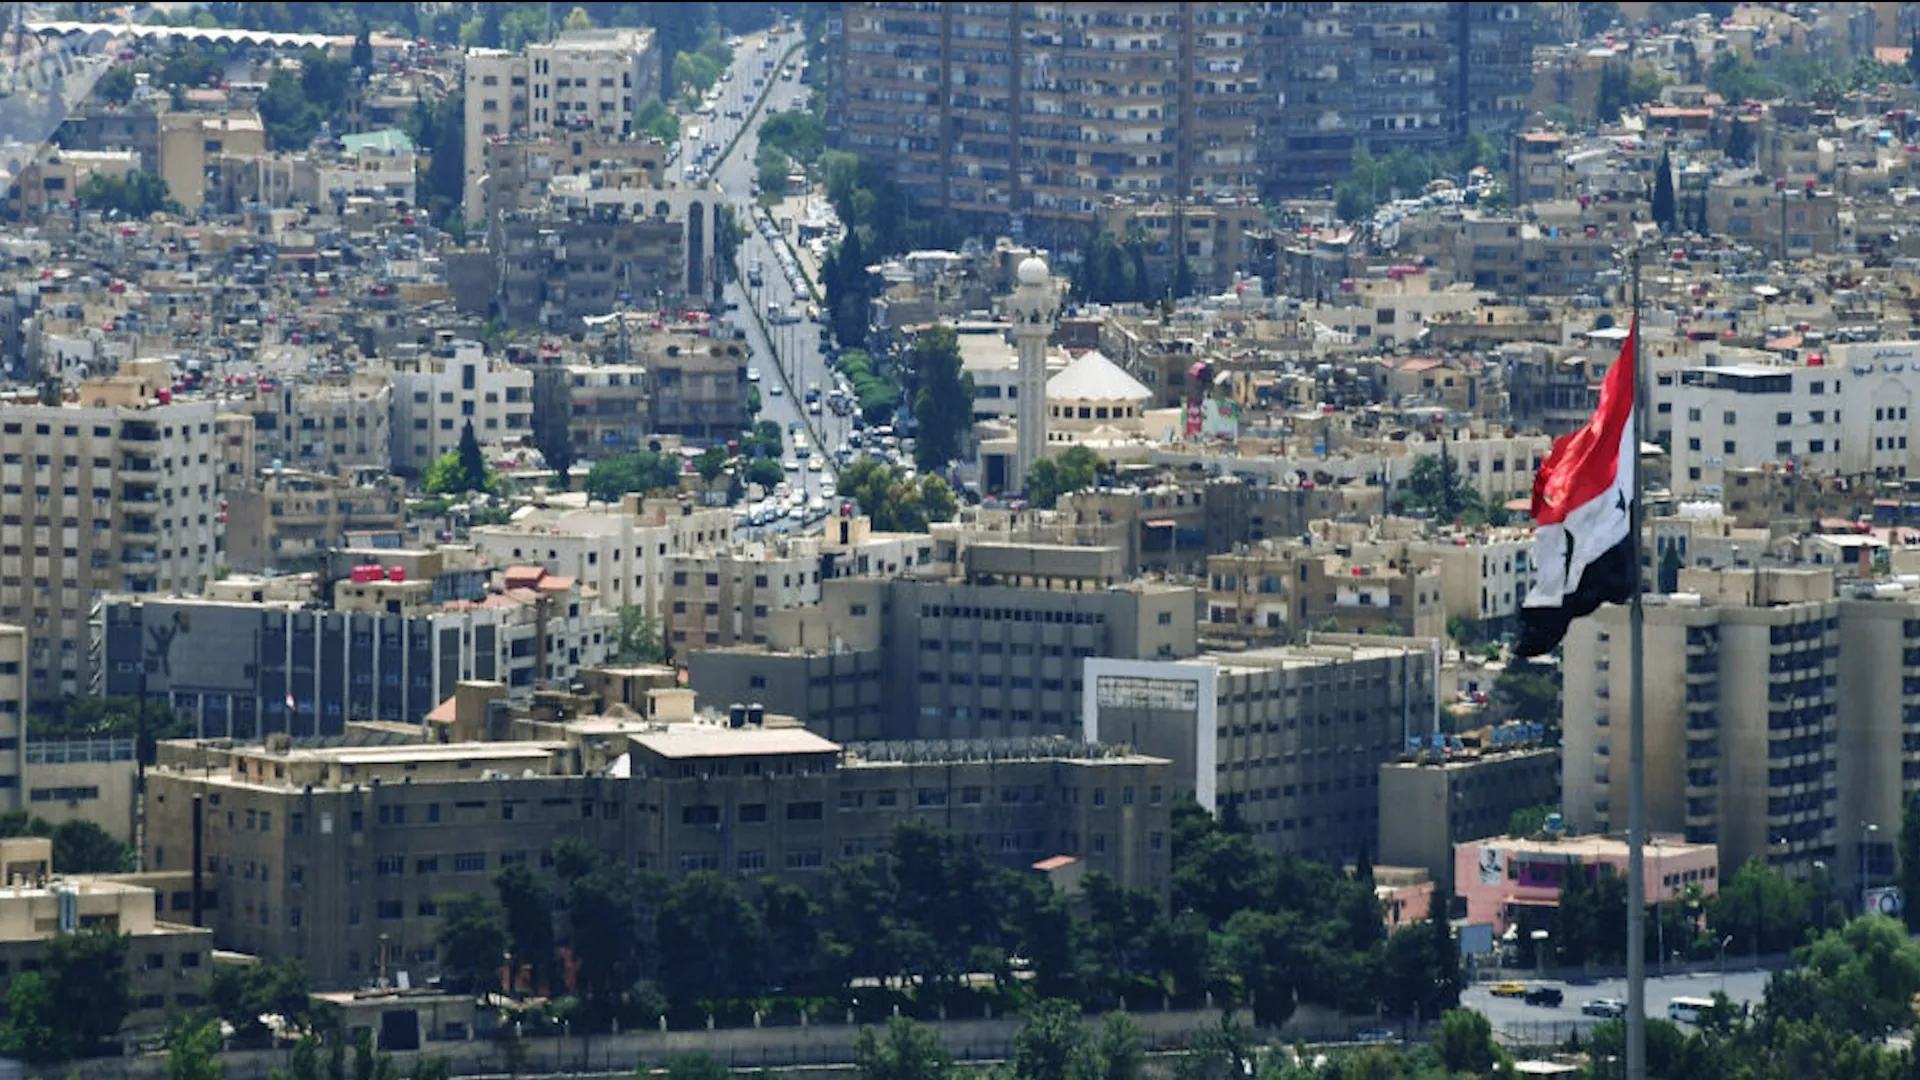 تحقيق استقصائي يكشف عن شبكات أمنية لـ "تزور" ملكية العقارات في سوريا